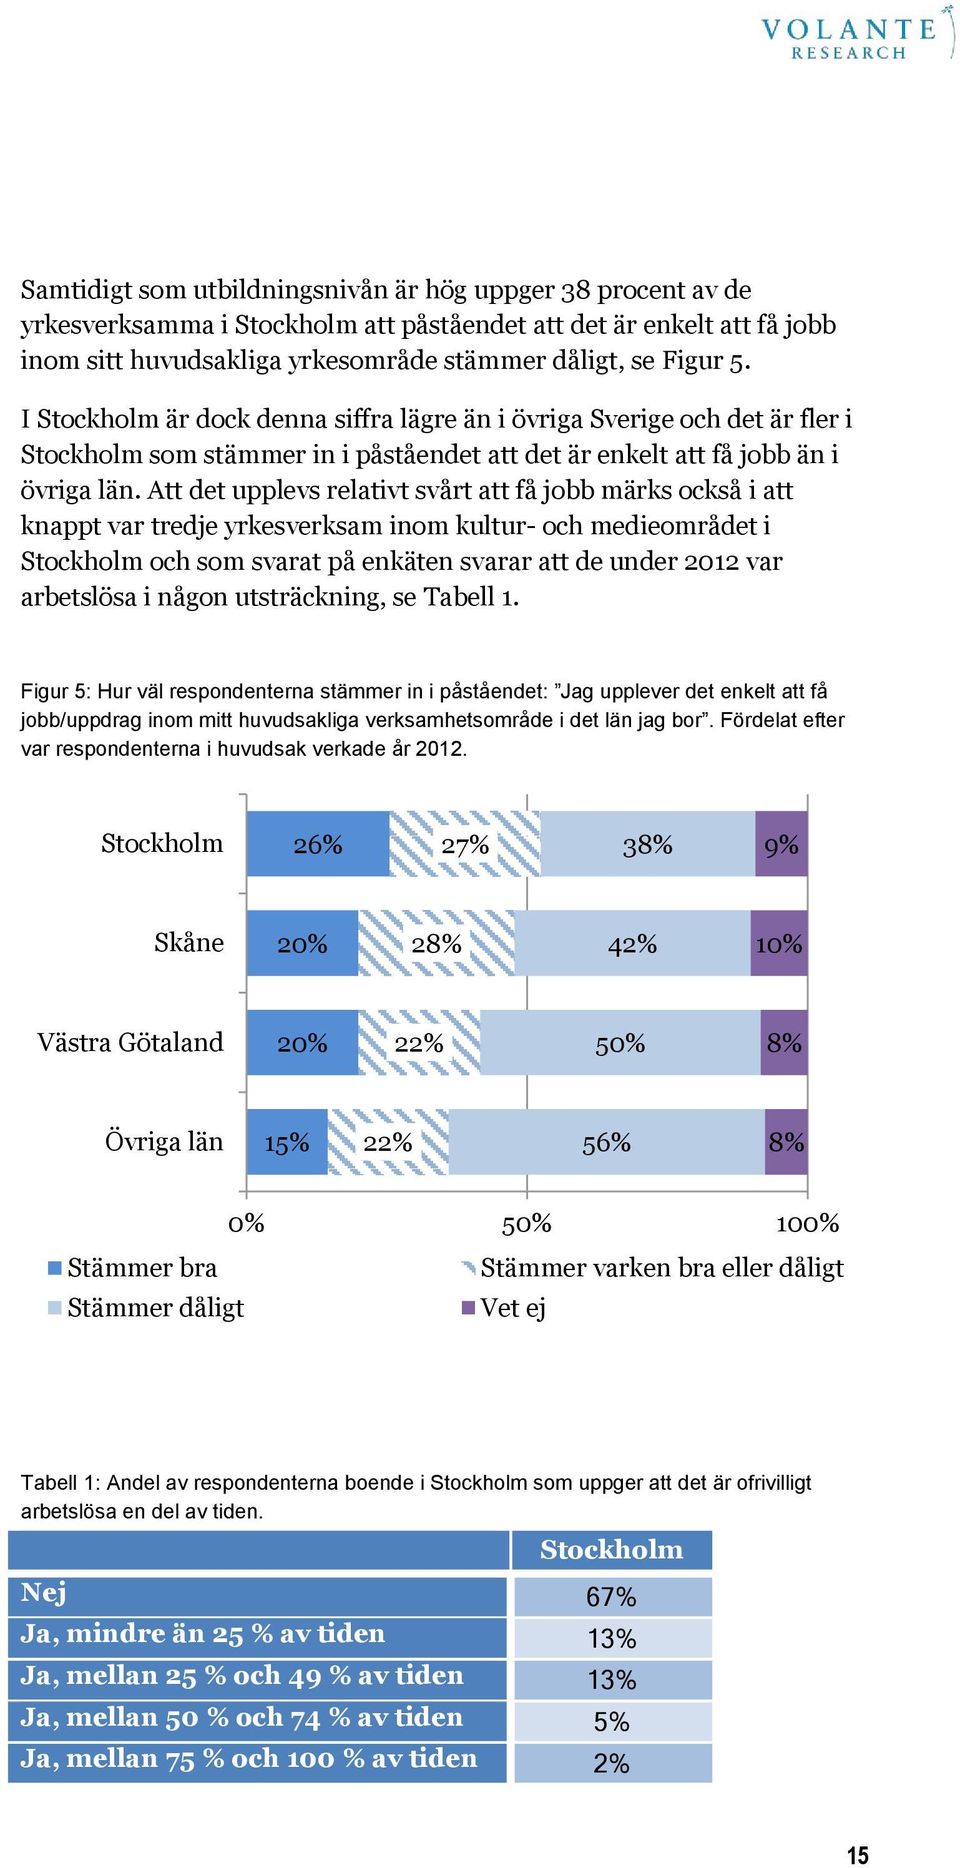 Att det upplevs relativt svårt att få jobb märks också i att knappt var tredje yrkesverksam inom kultur- och medieområdet i Stockholm och som svarat på enkäten svarar att de under 2012 var arbetslösa